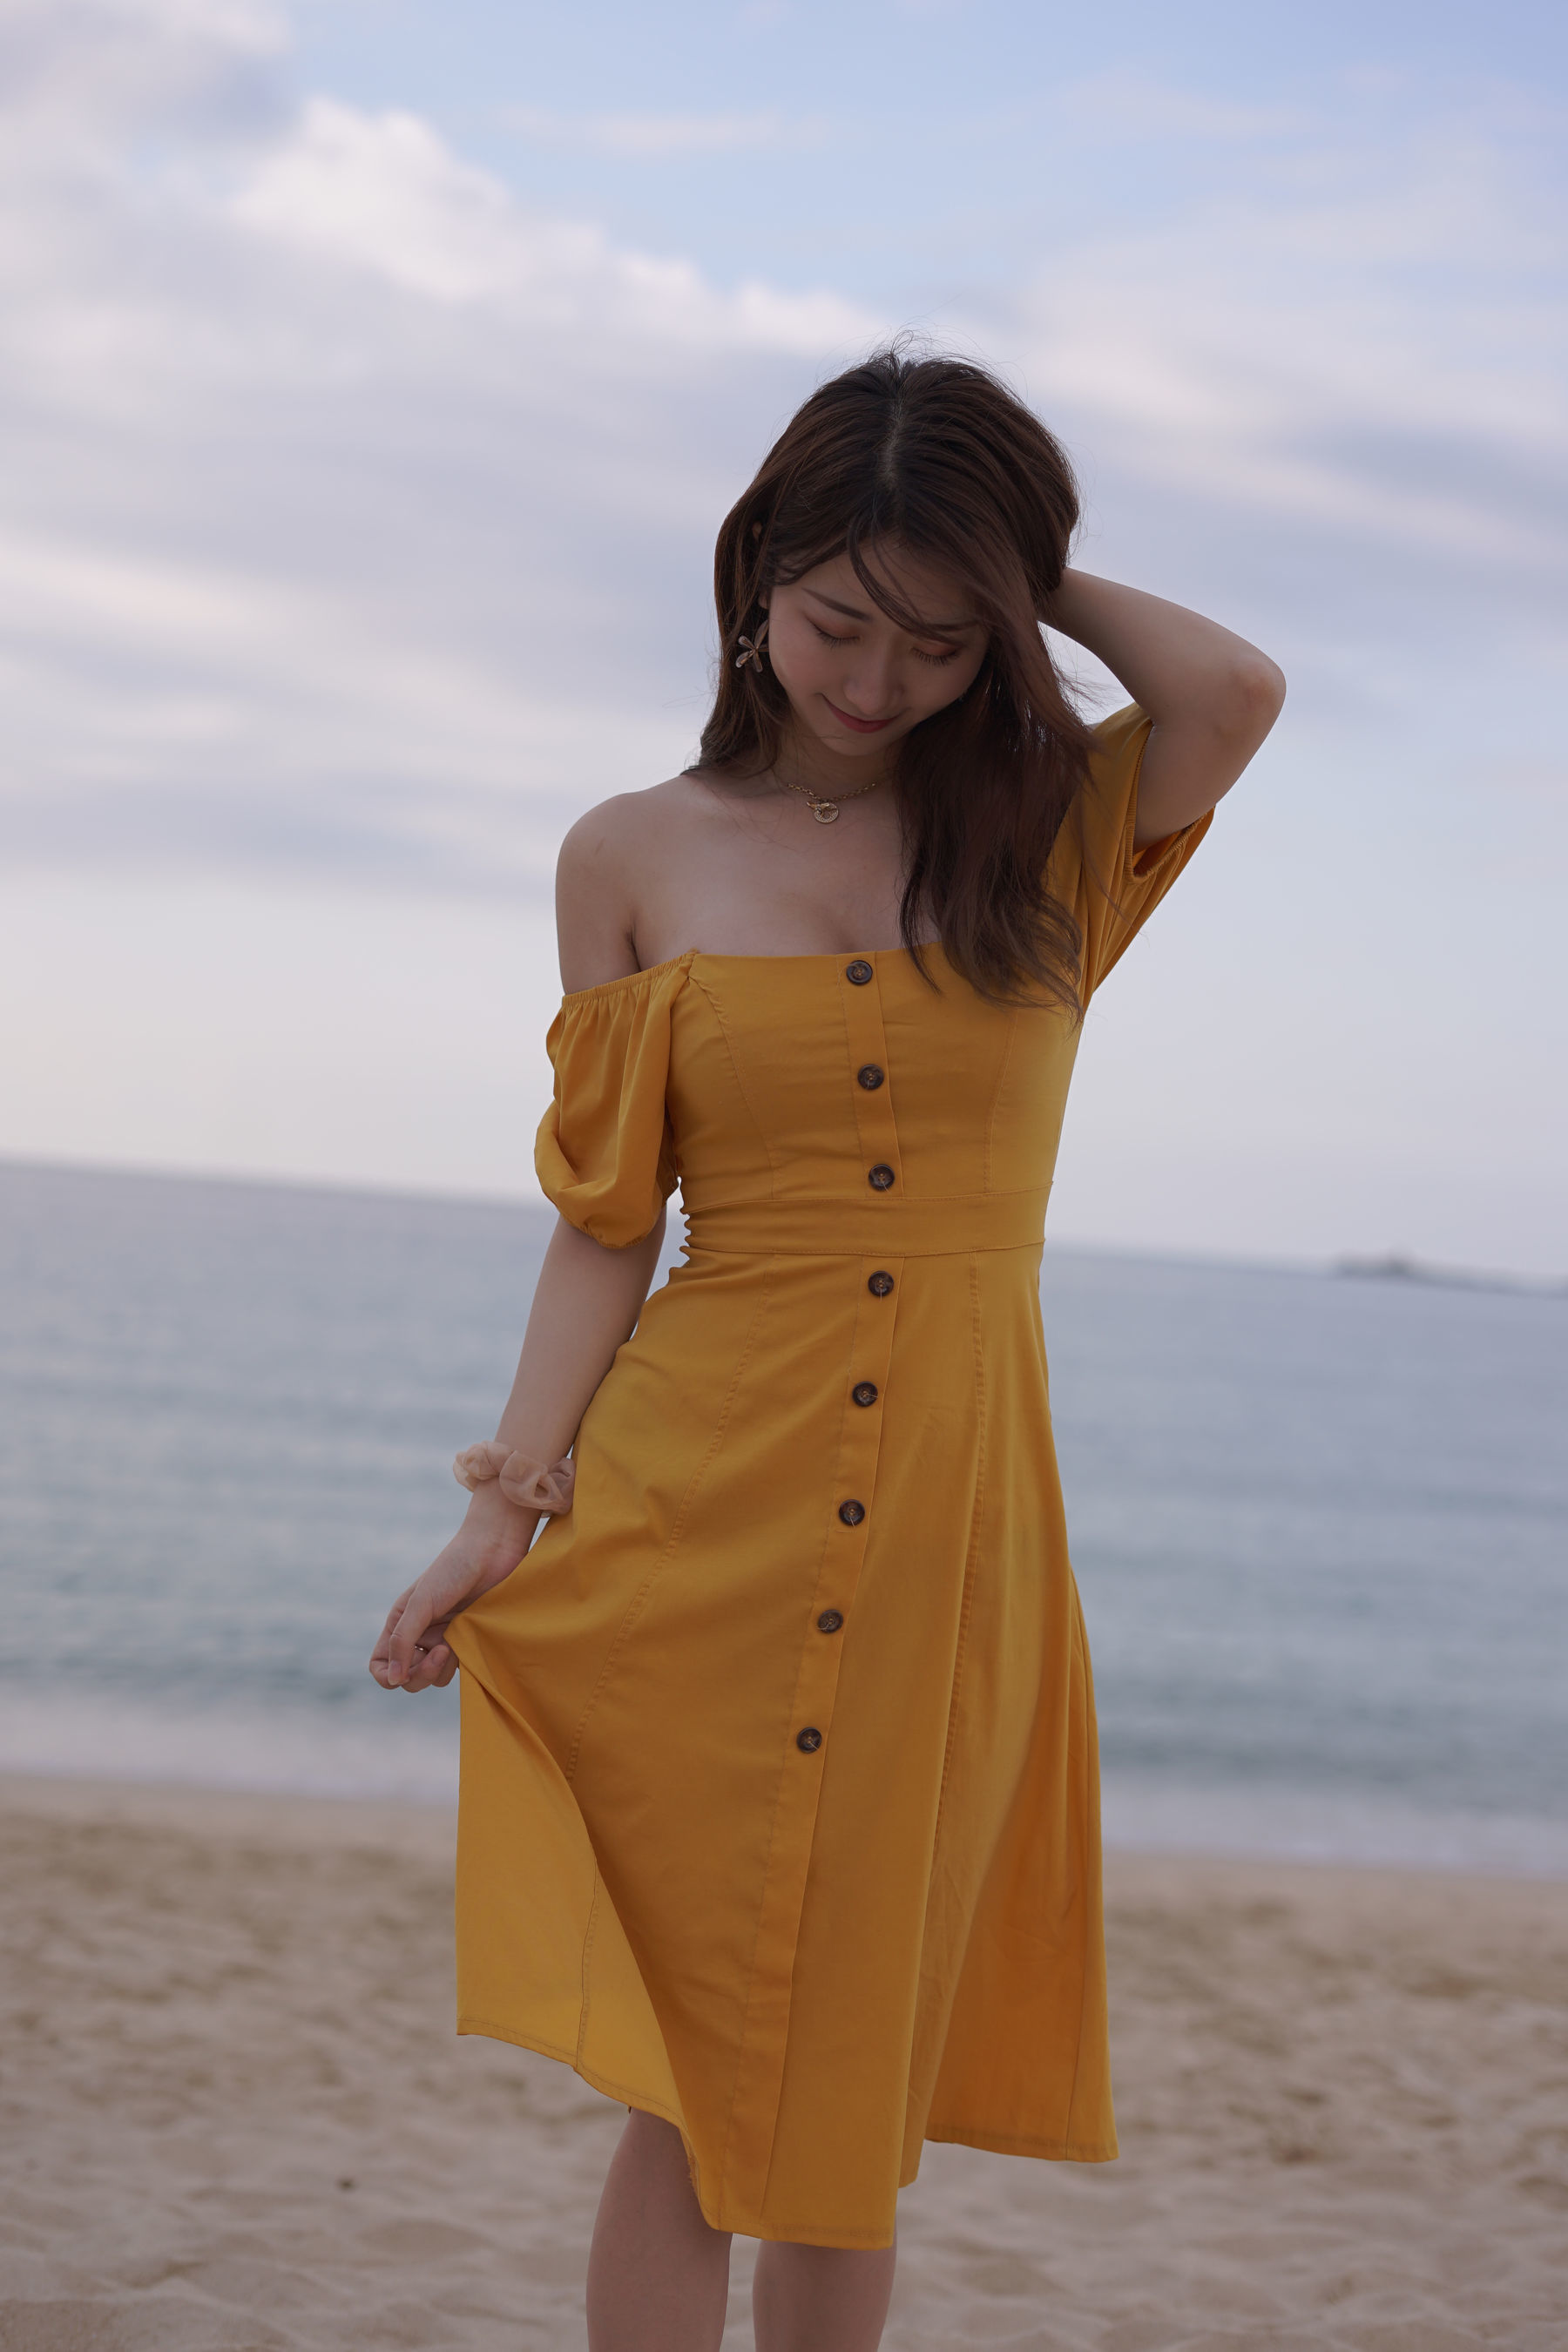 [COS福利] 人气Coser黑川 - 海岛之旅 黄色连衣裙